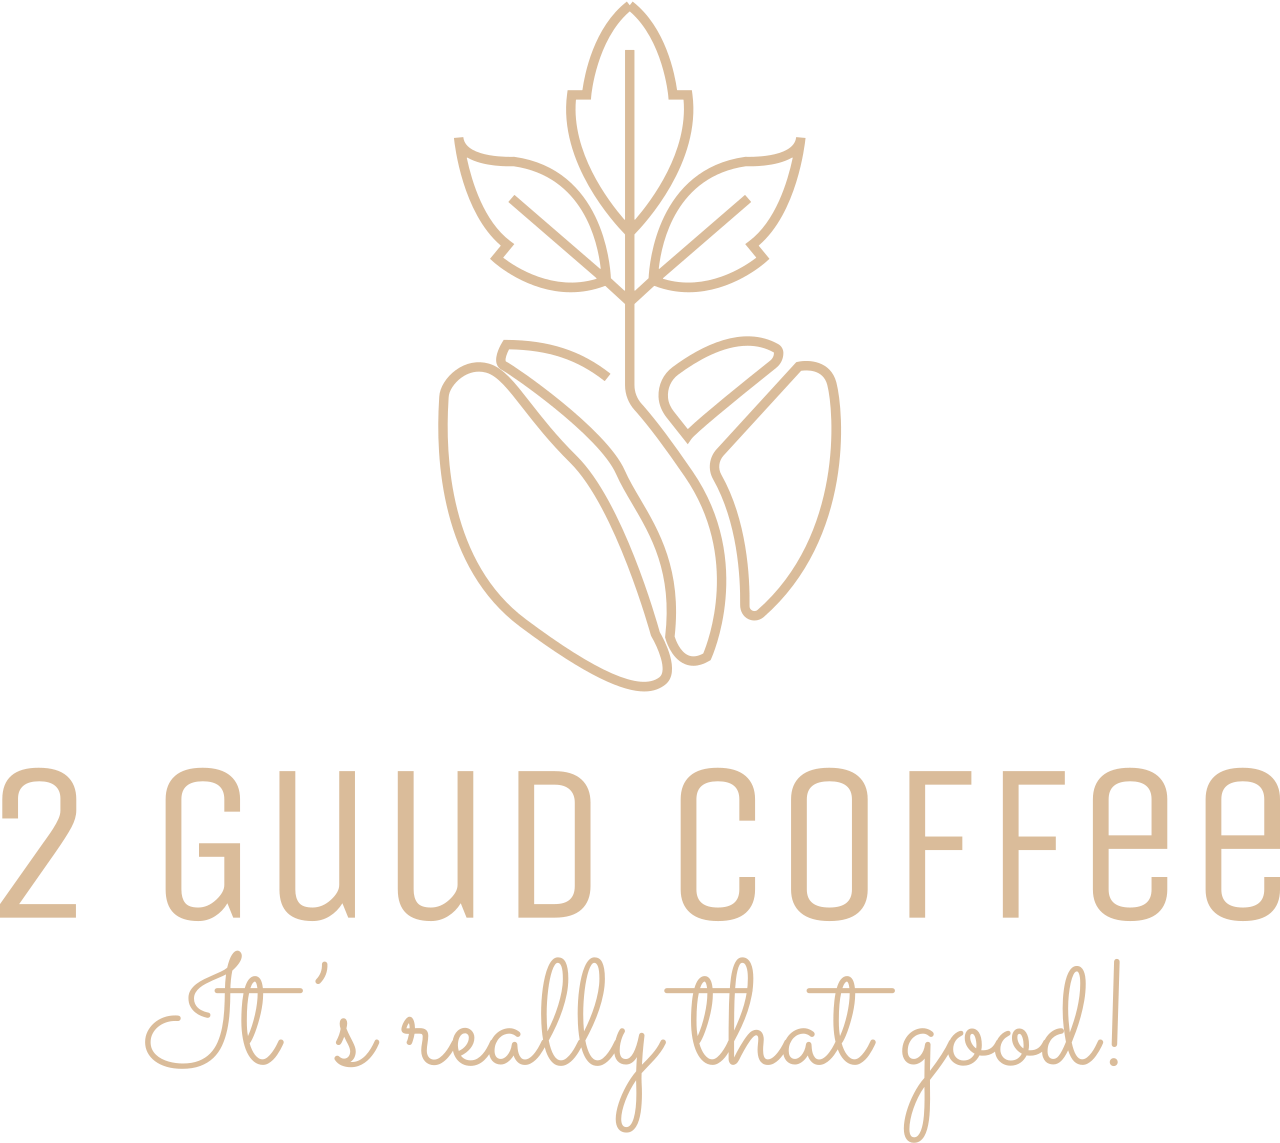 2 Guud Coffee's logo